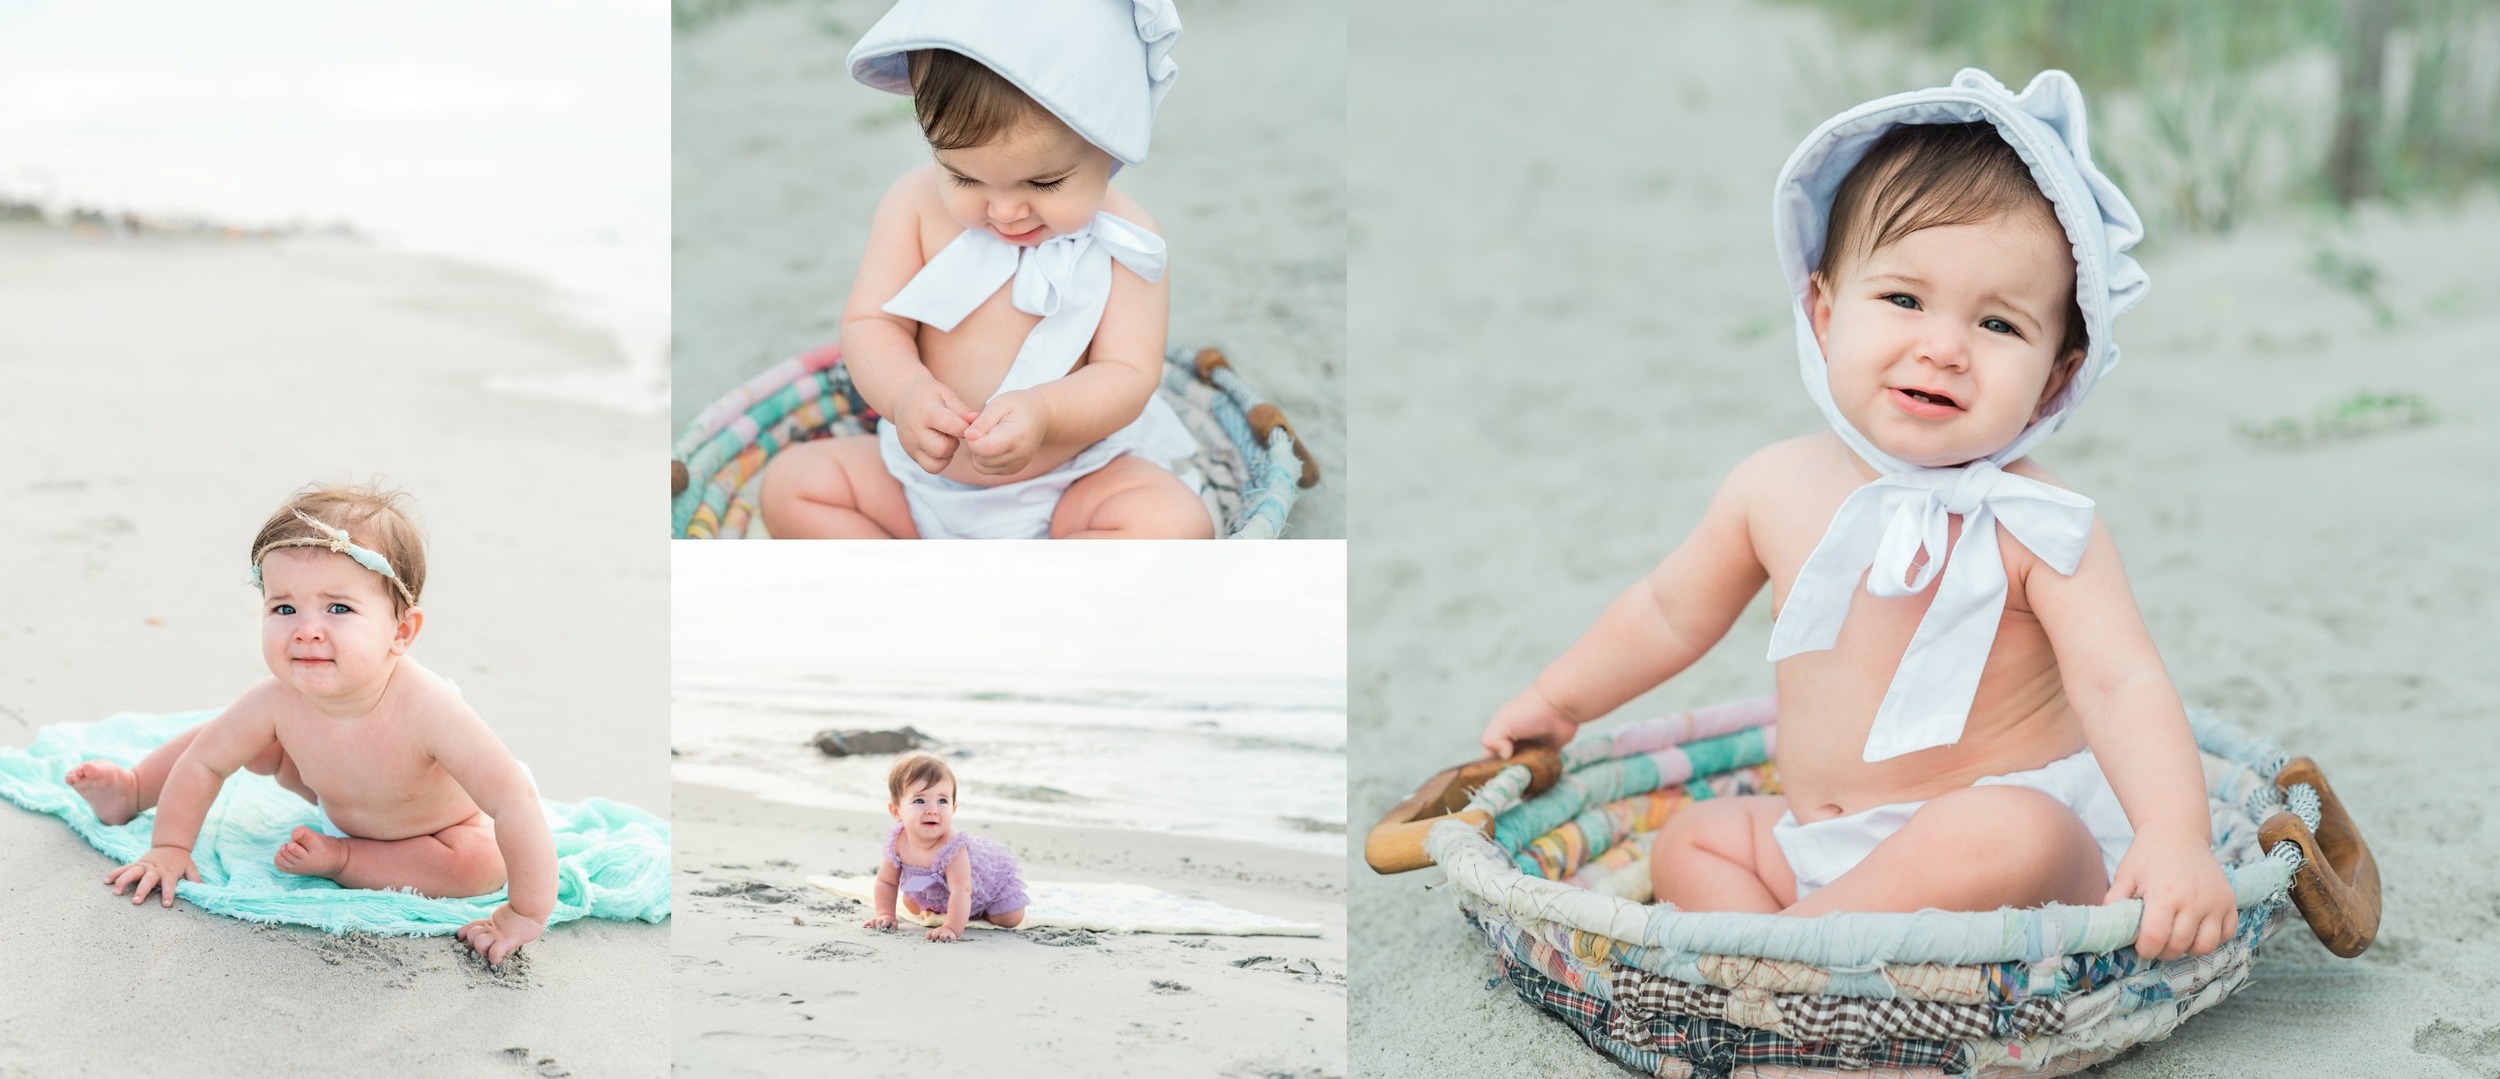 Folly Beach Baby photographer  4.jpg